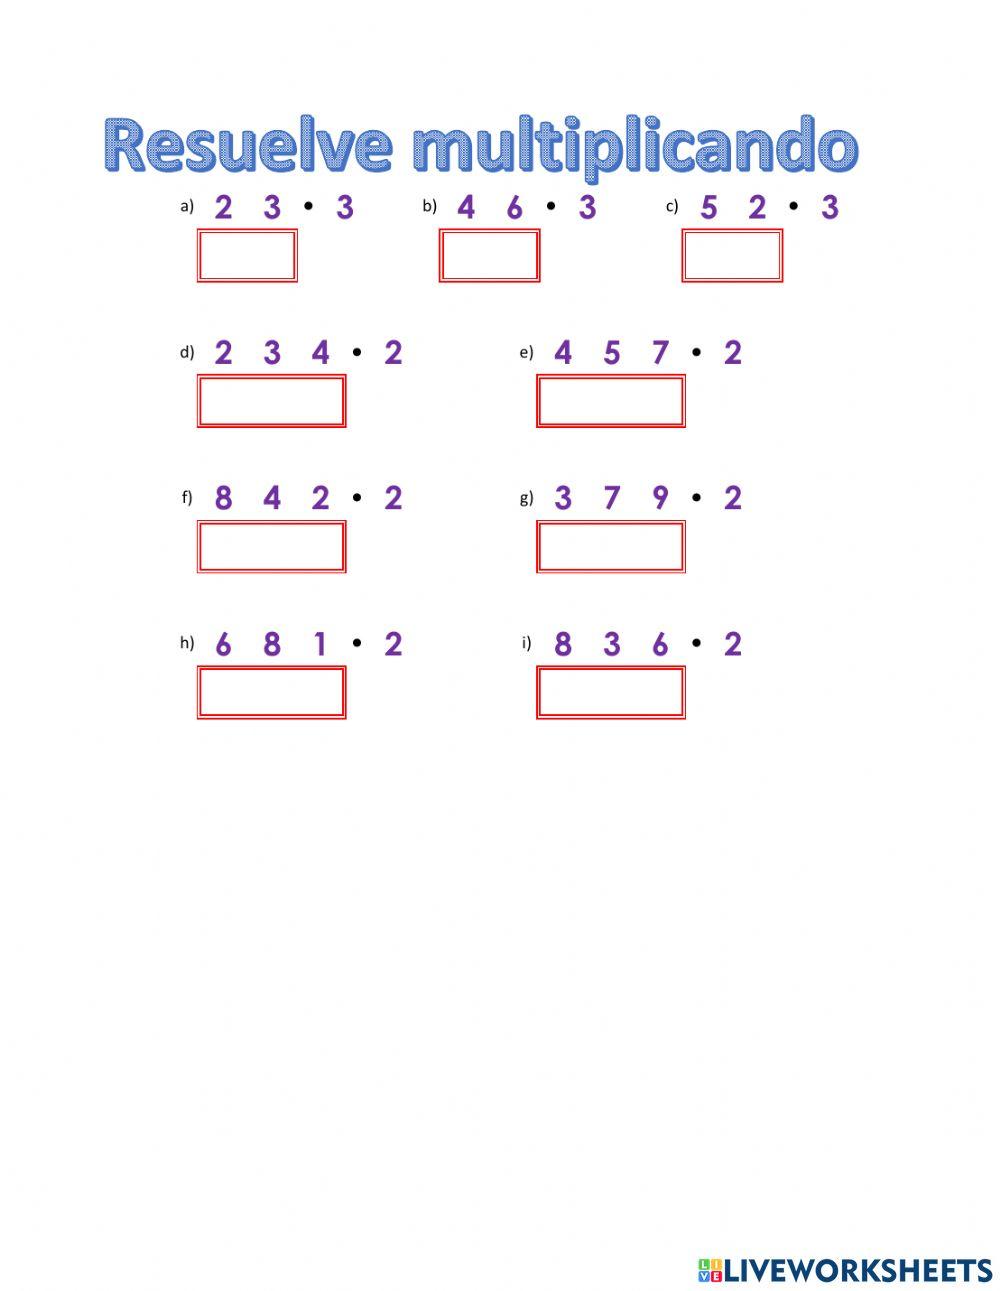 Resuelve multiplicaciones por 2